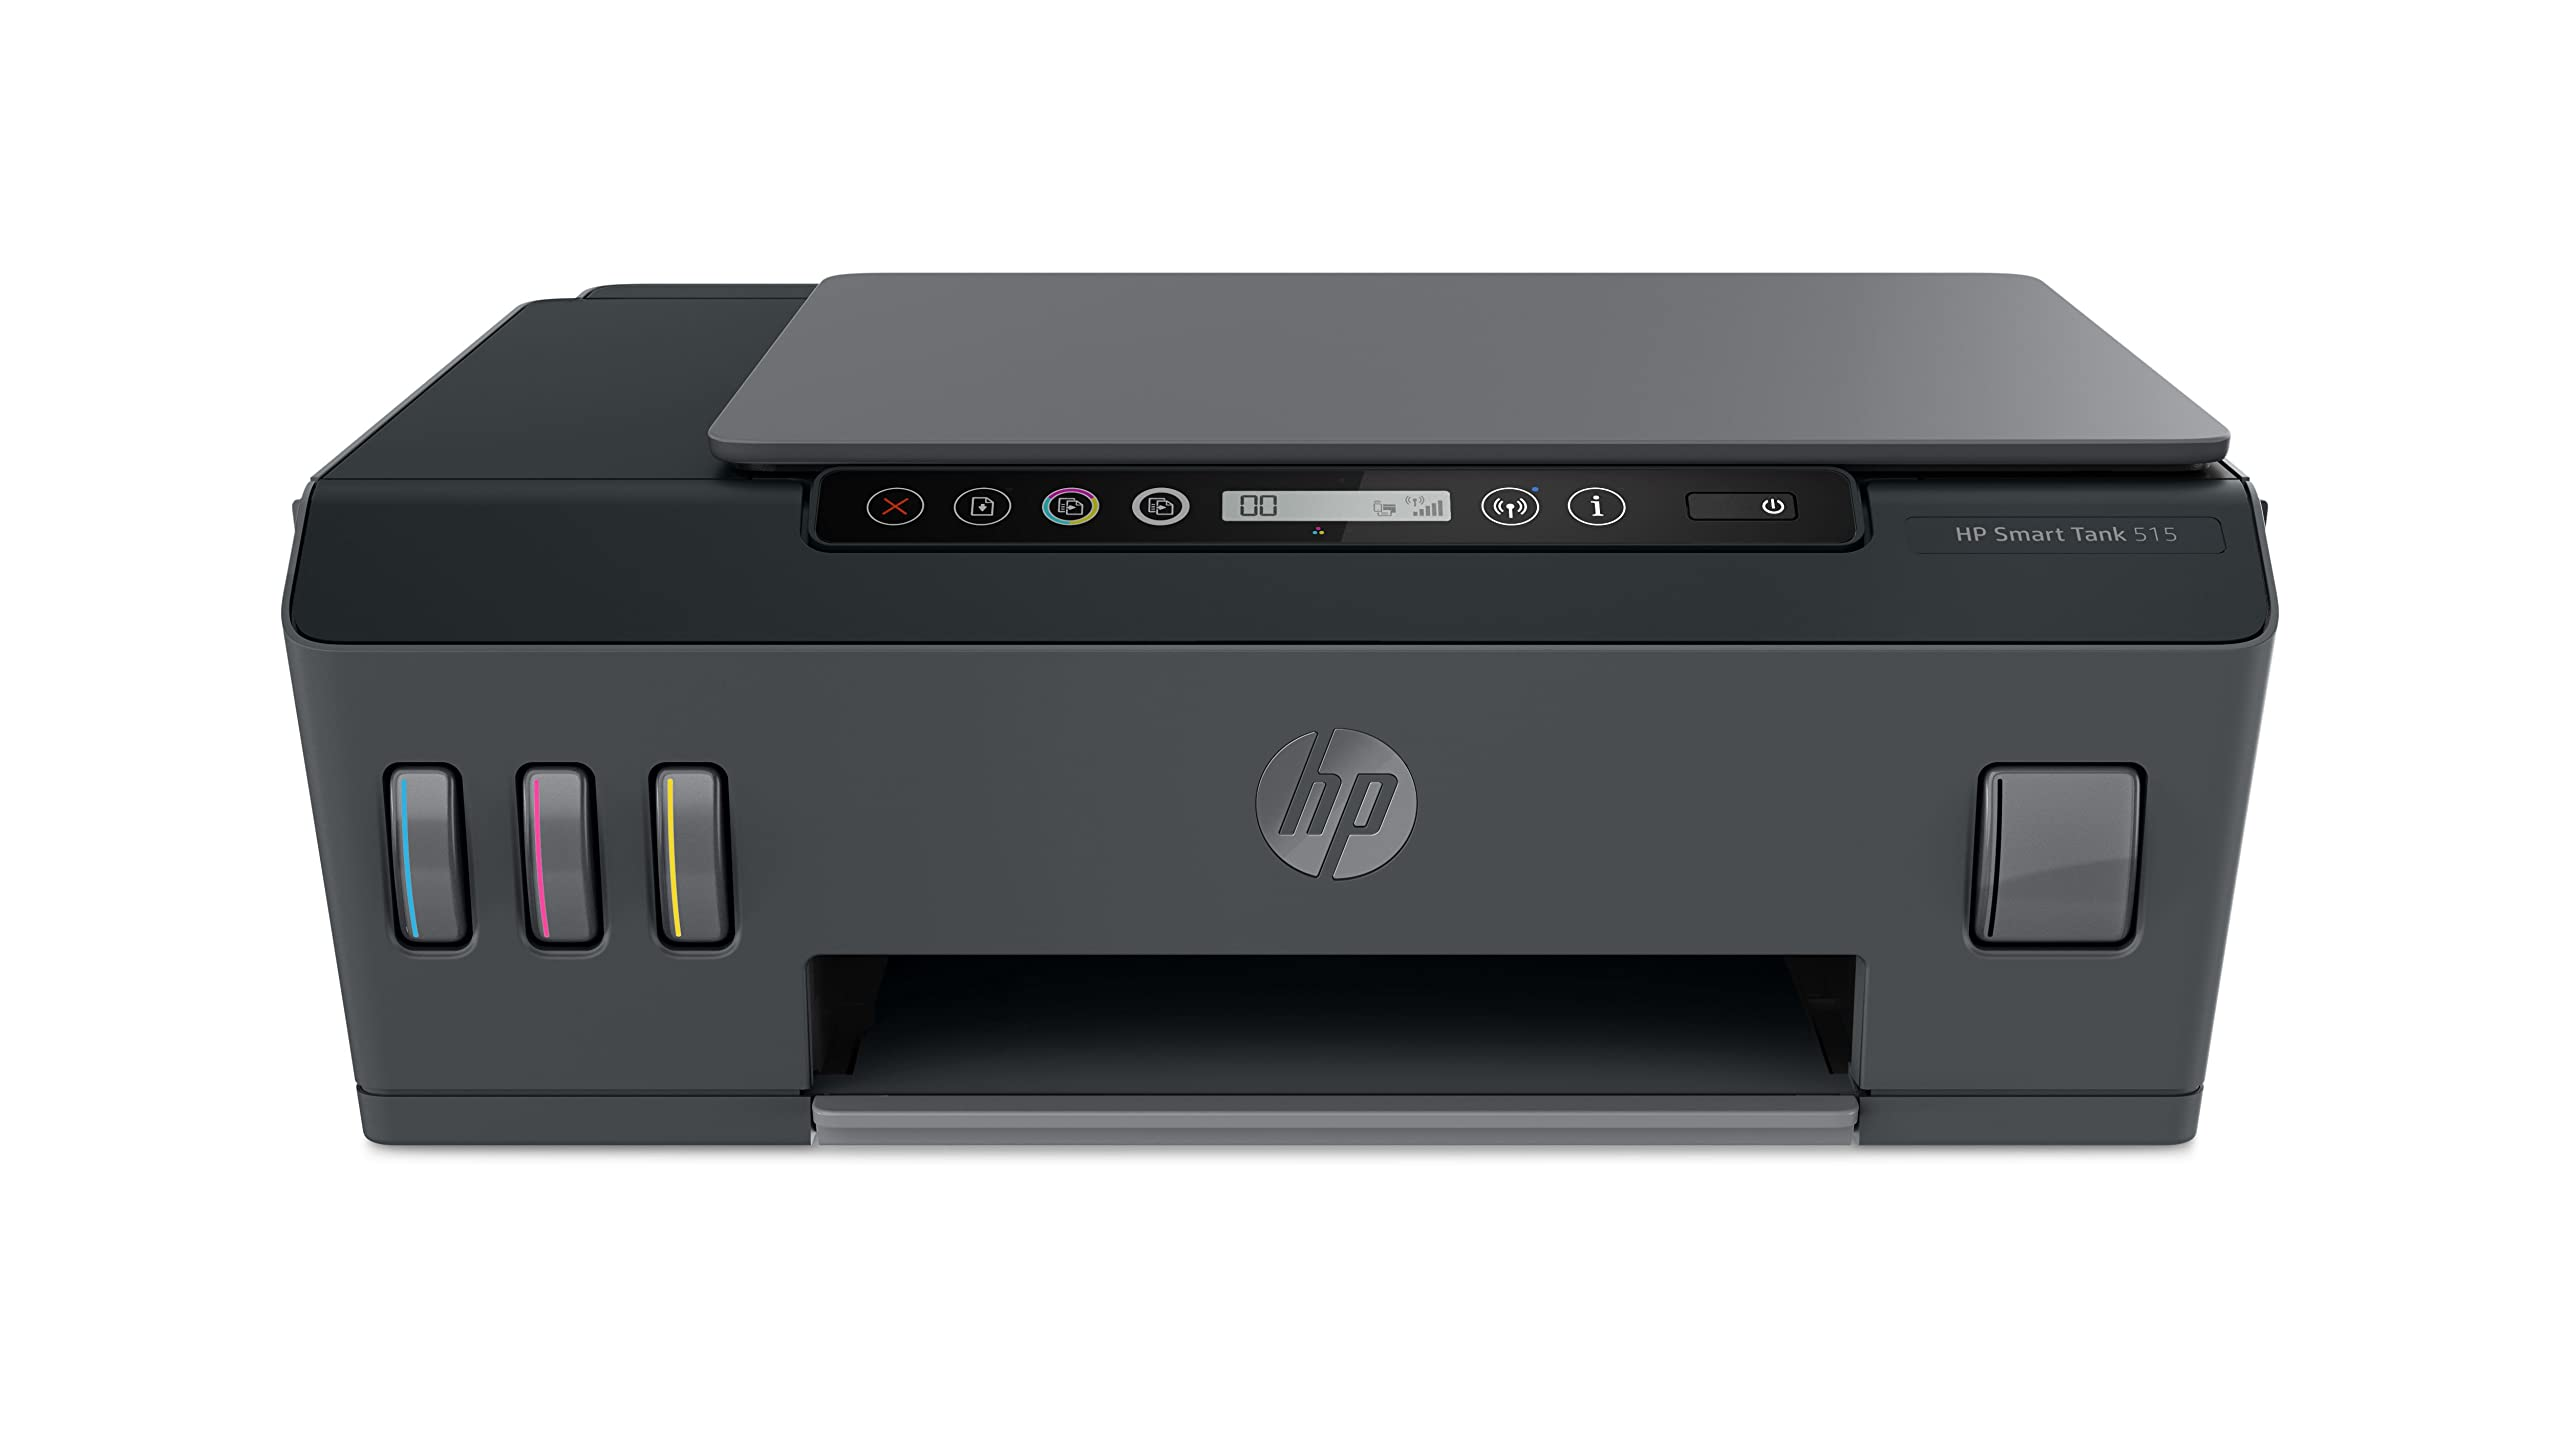 Tank Smart HP Netzwerkfähig WLAN Multifunktionsdrucker 515 Inkjet